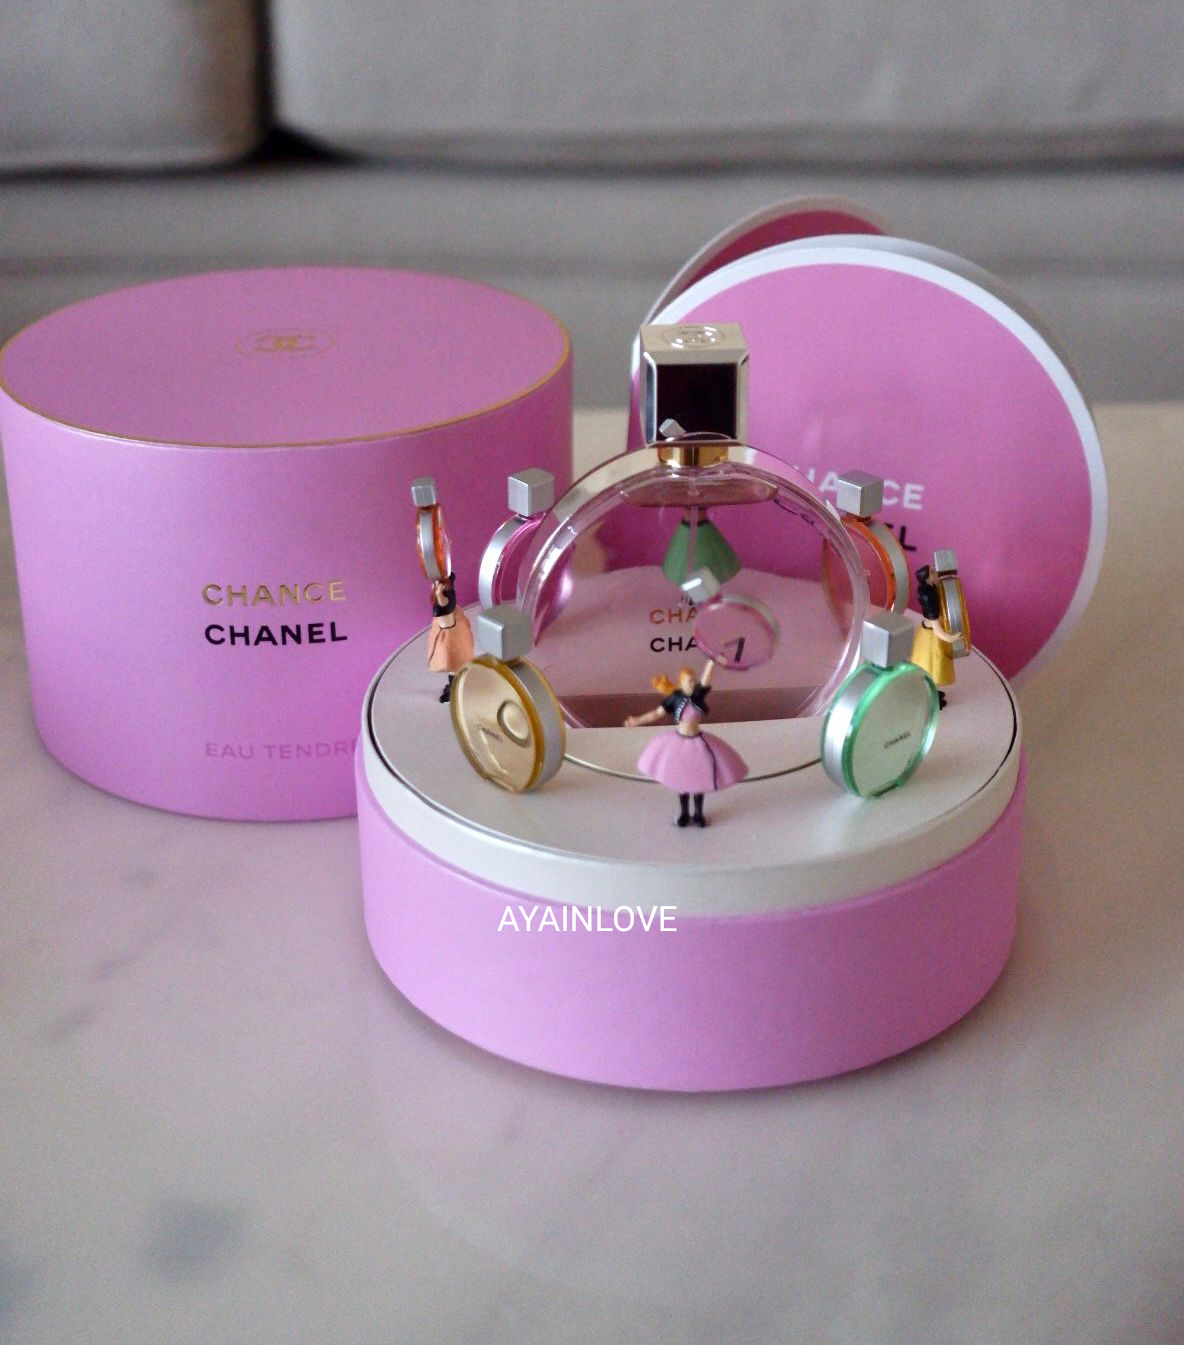 Chanel Chance Eau Tendre LIMITED EDITION EAU DE PARFUM MUSIC BOX